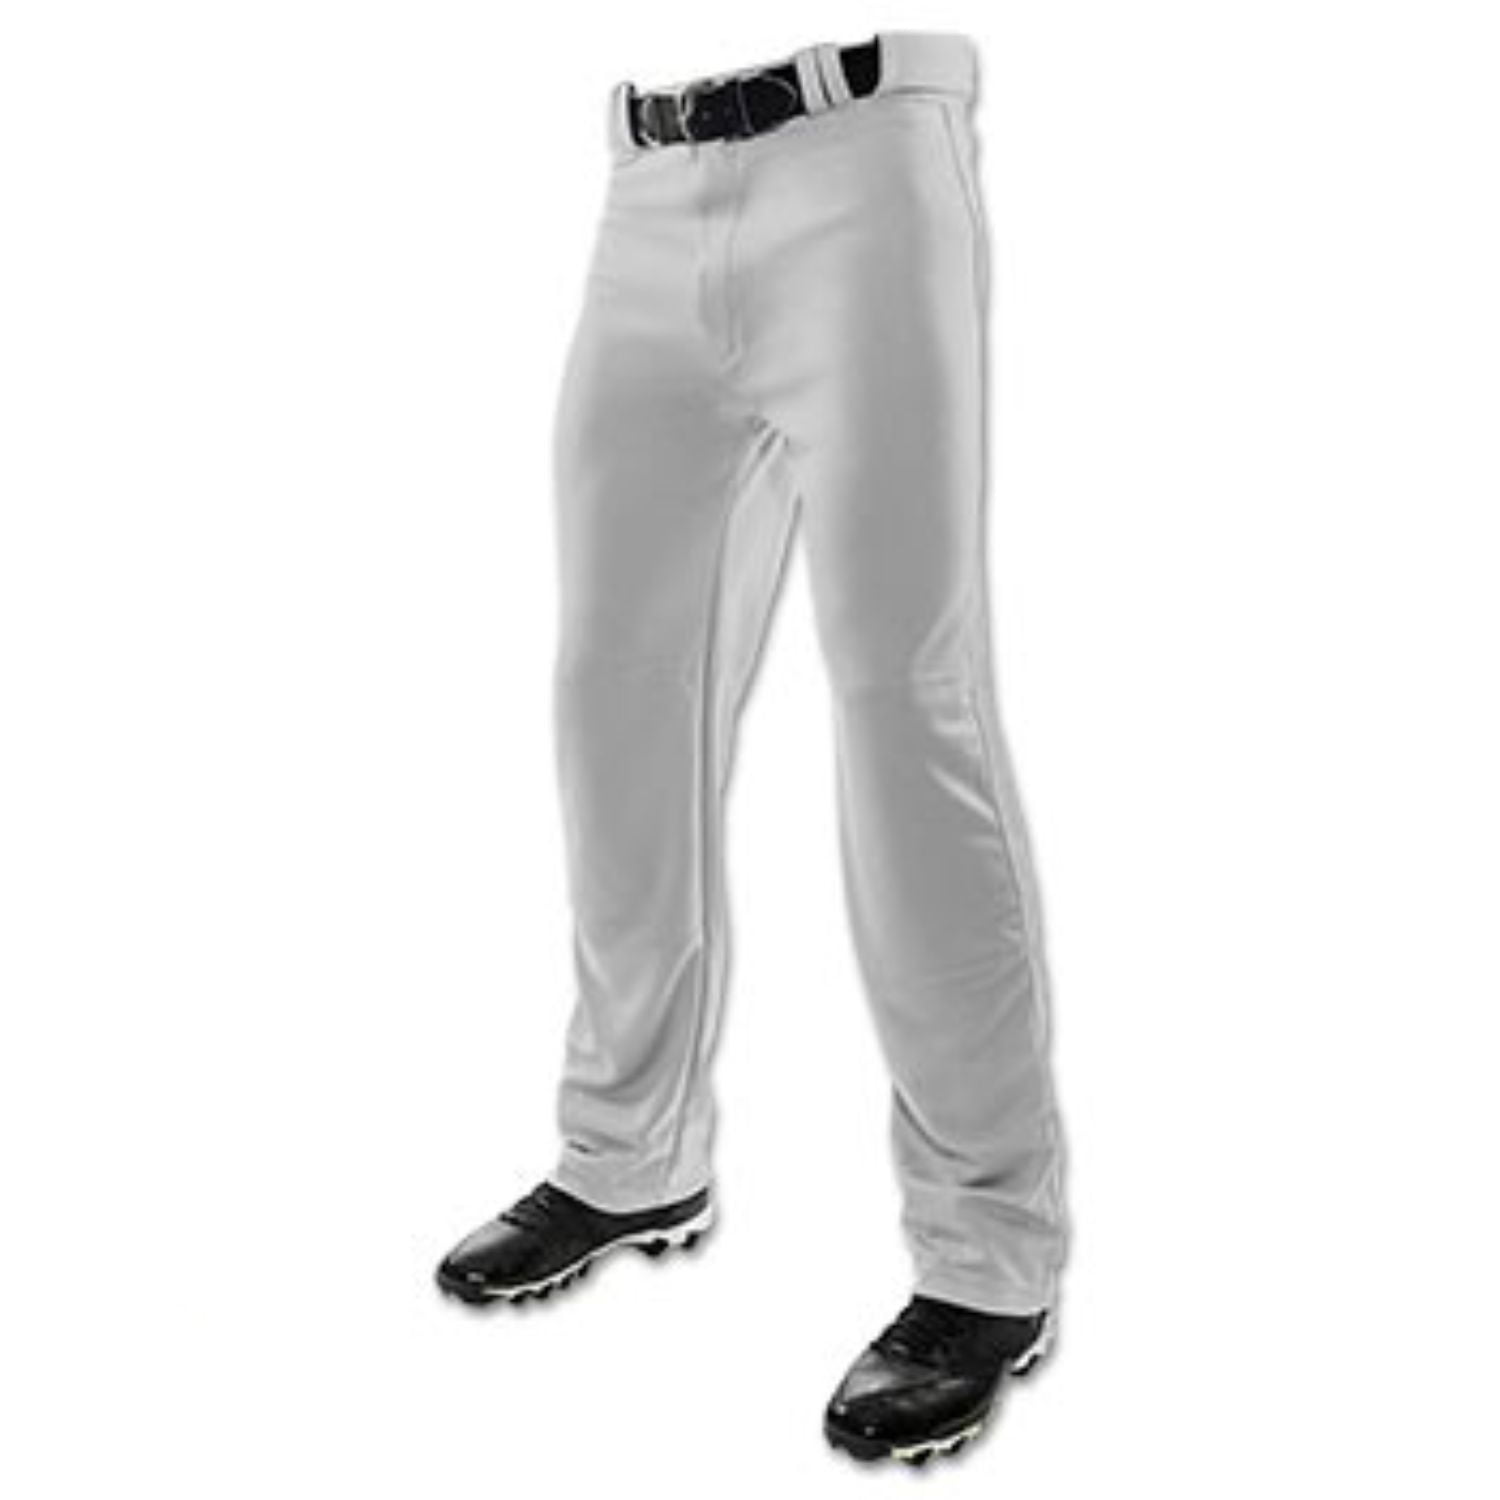 Champro Adult Baseball Pants Gray Size XL 